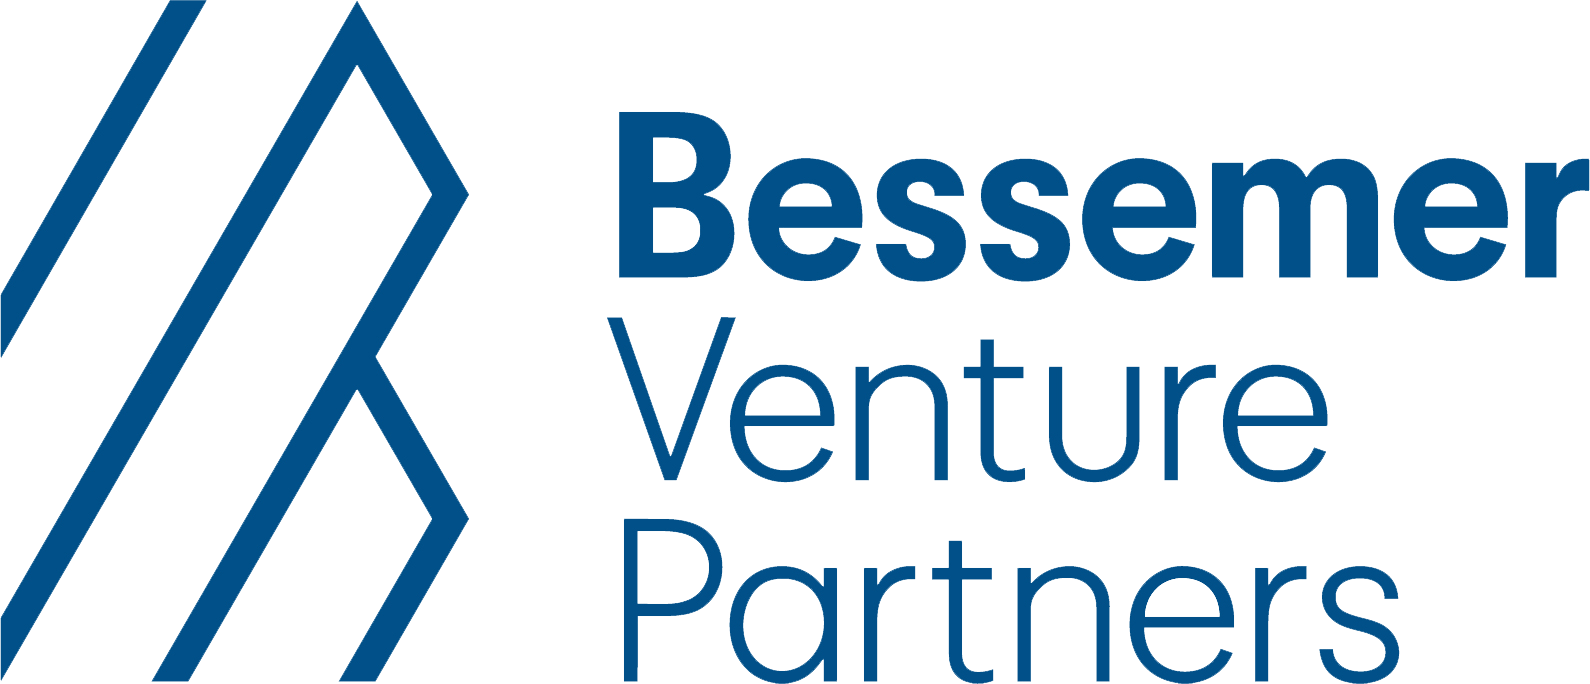 Bessemer Ventures Partners